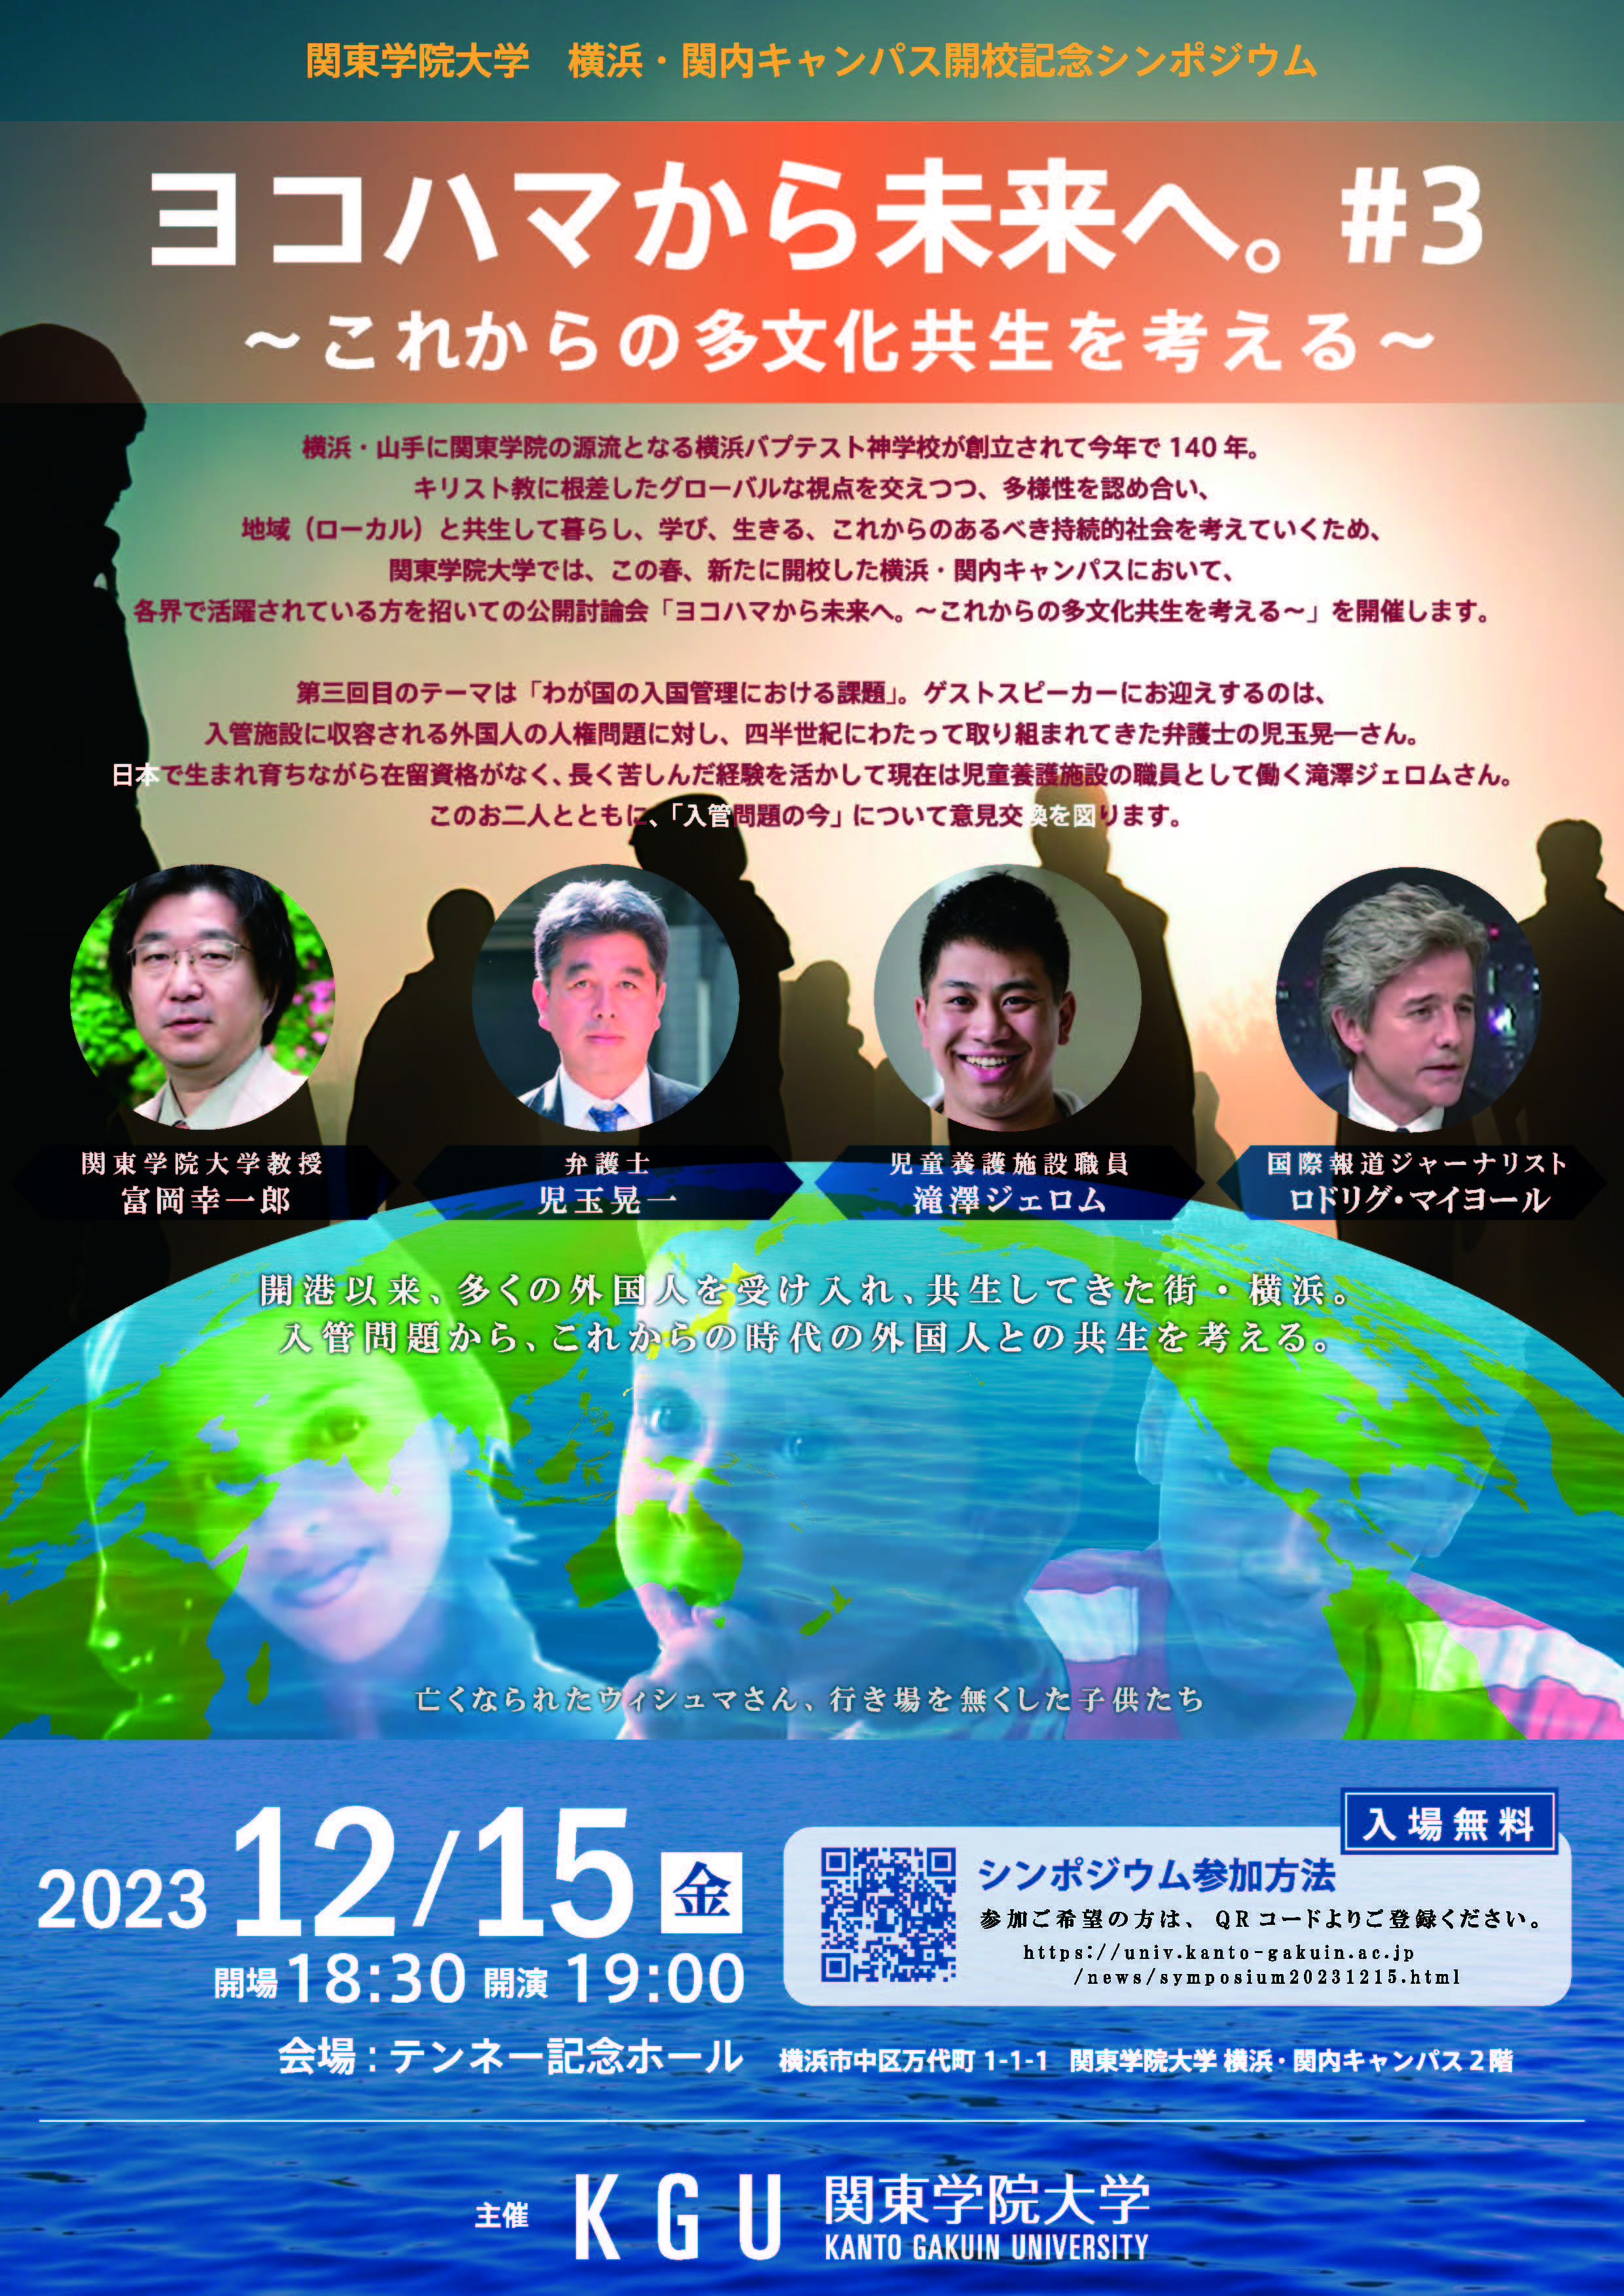 関東学院大学 横浜・ 関内キャンパス開校記念シンポジウム「ヨコハマから未来へ。#3 ～これからの多文化共生を考える～」開催のお知らせ